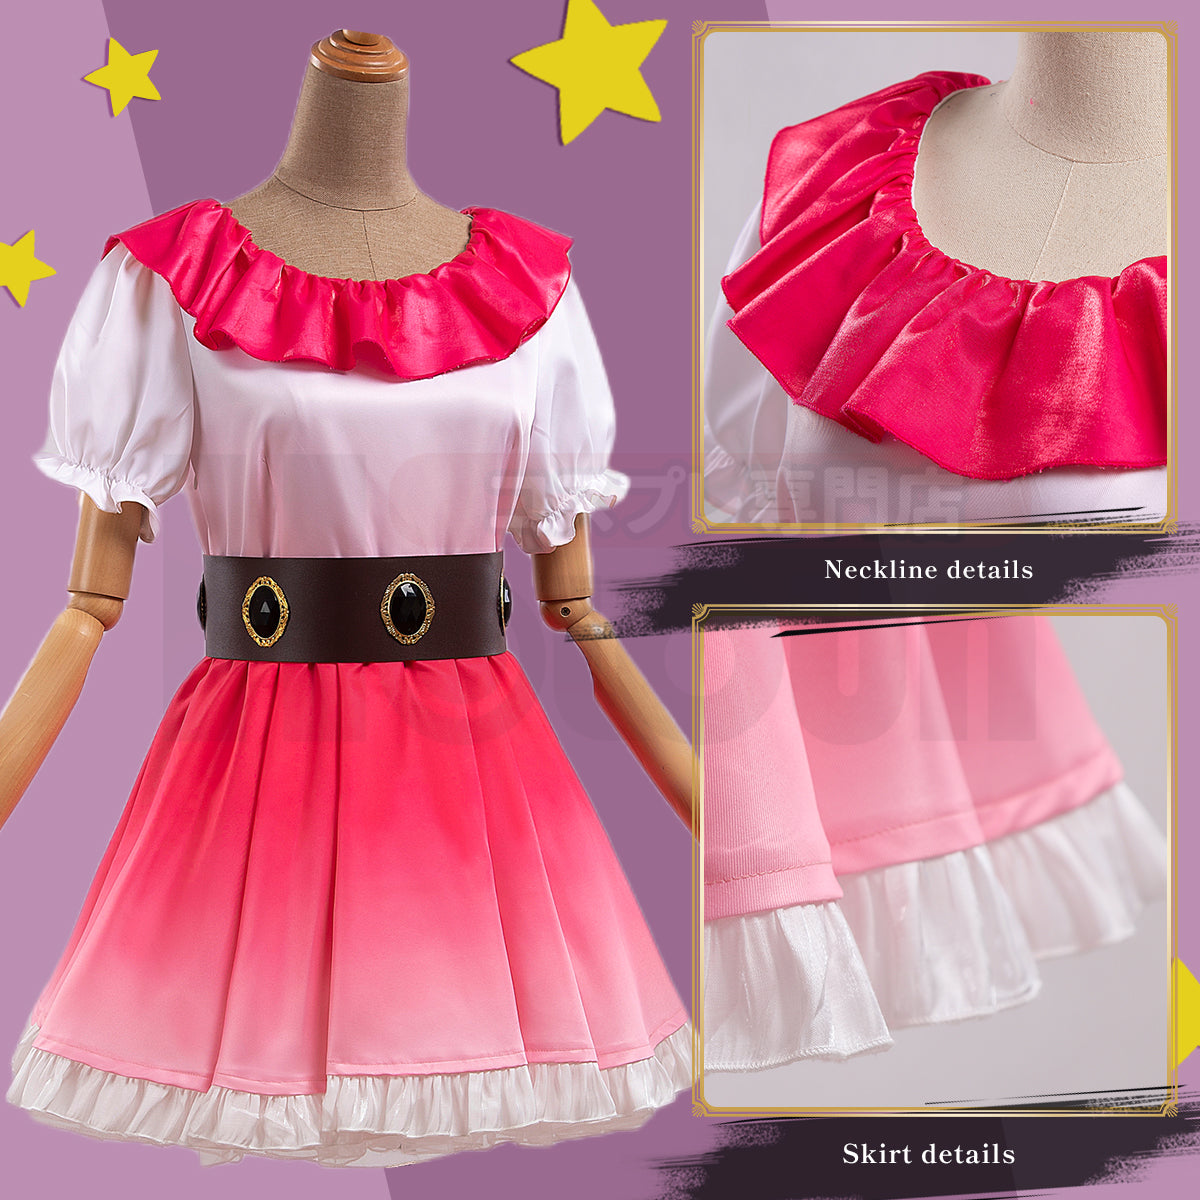 Oshi no Ko Hoshino Ai Cosplay Costume Kawaii Pink Dress Set